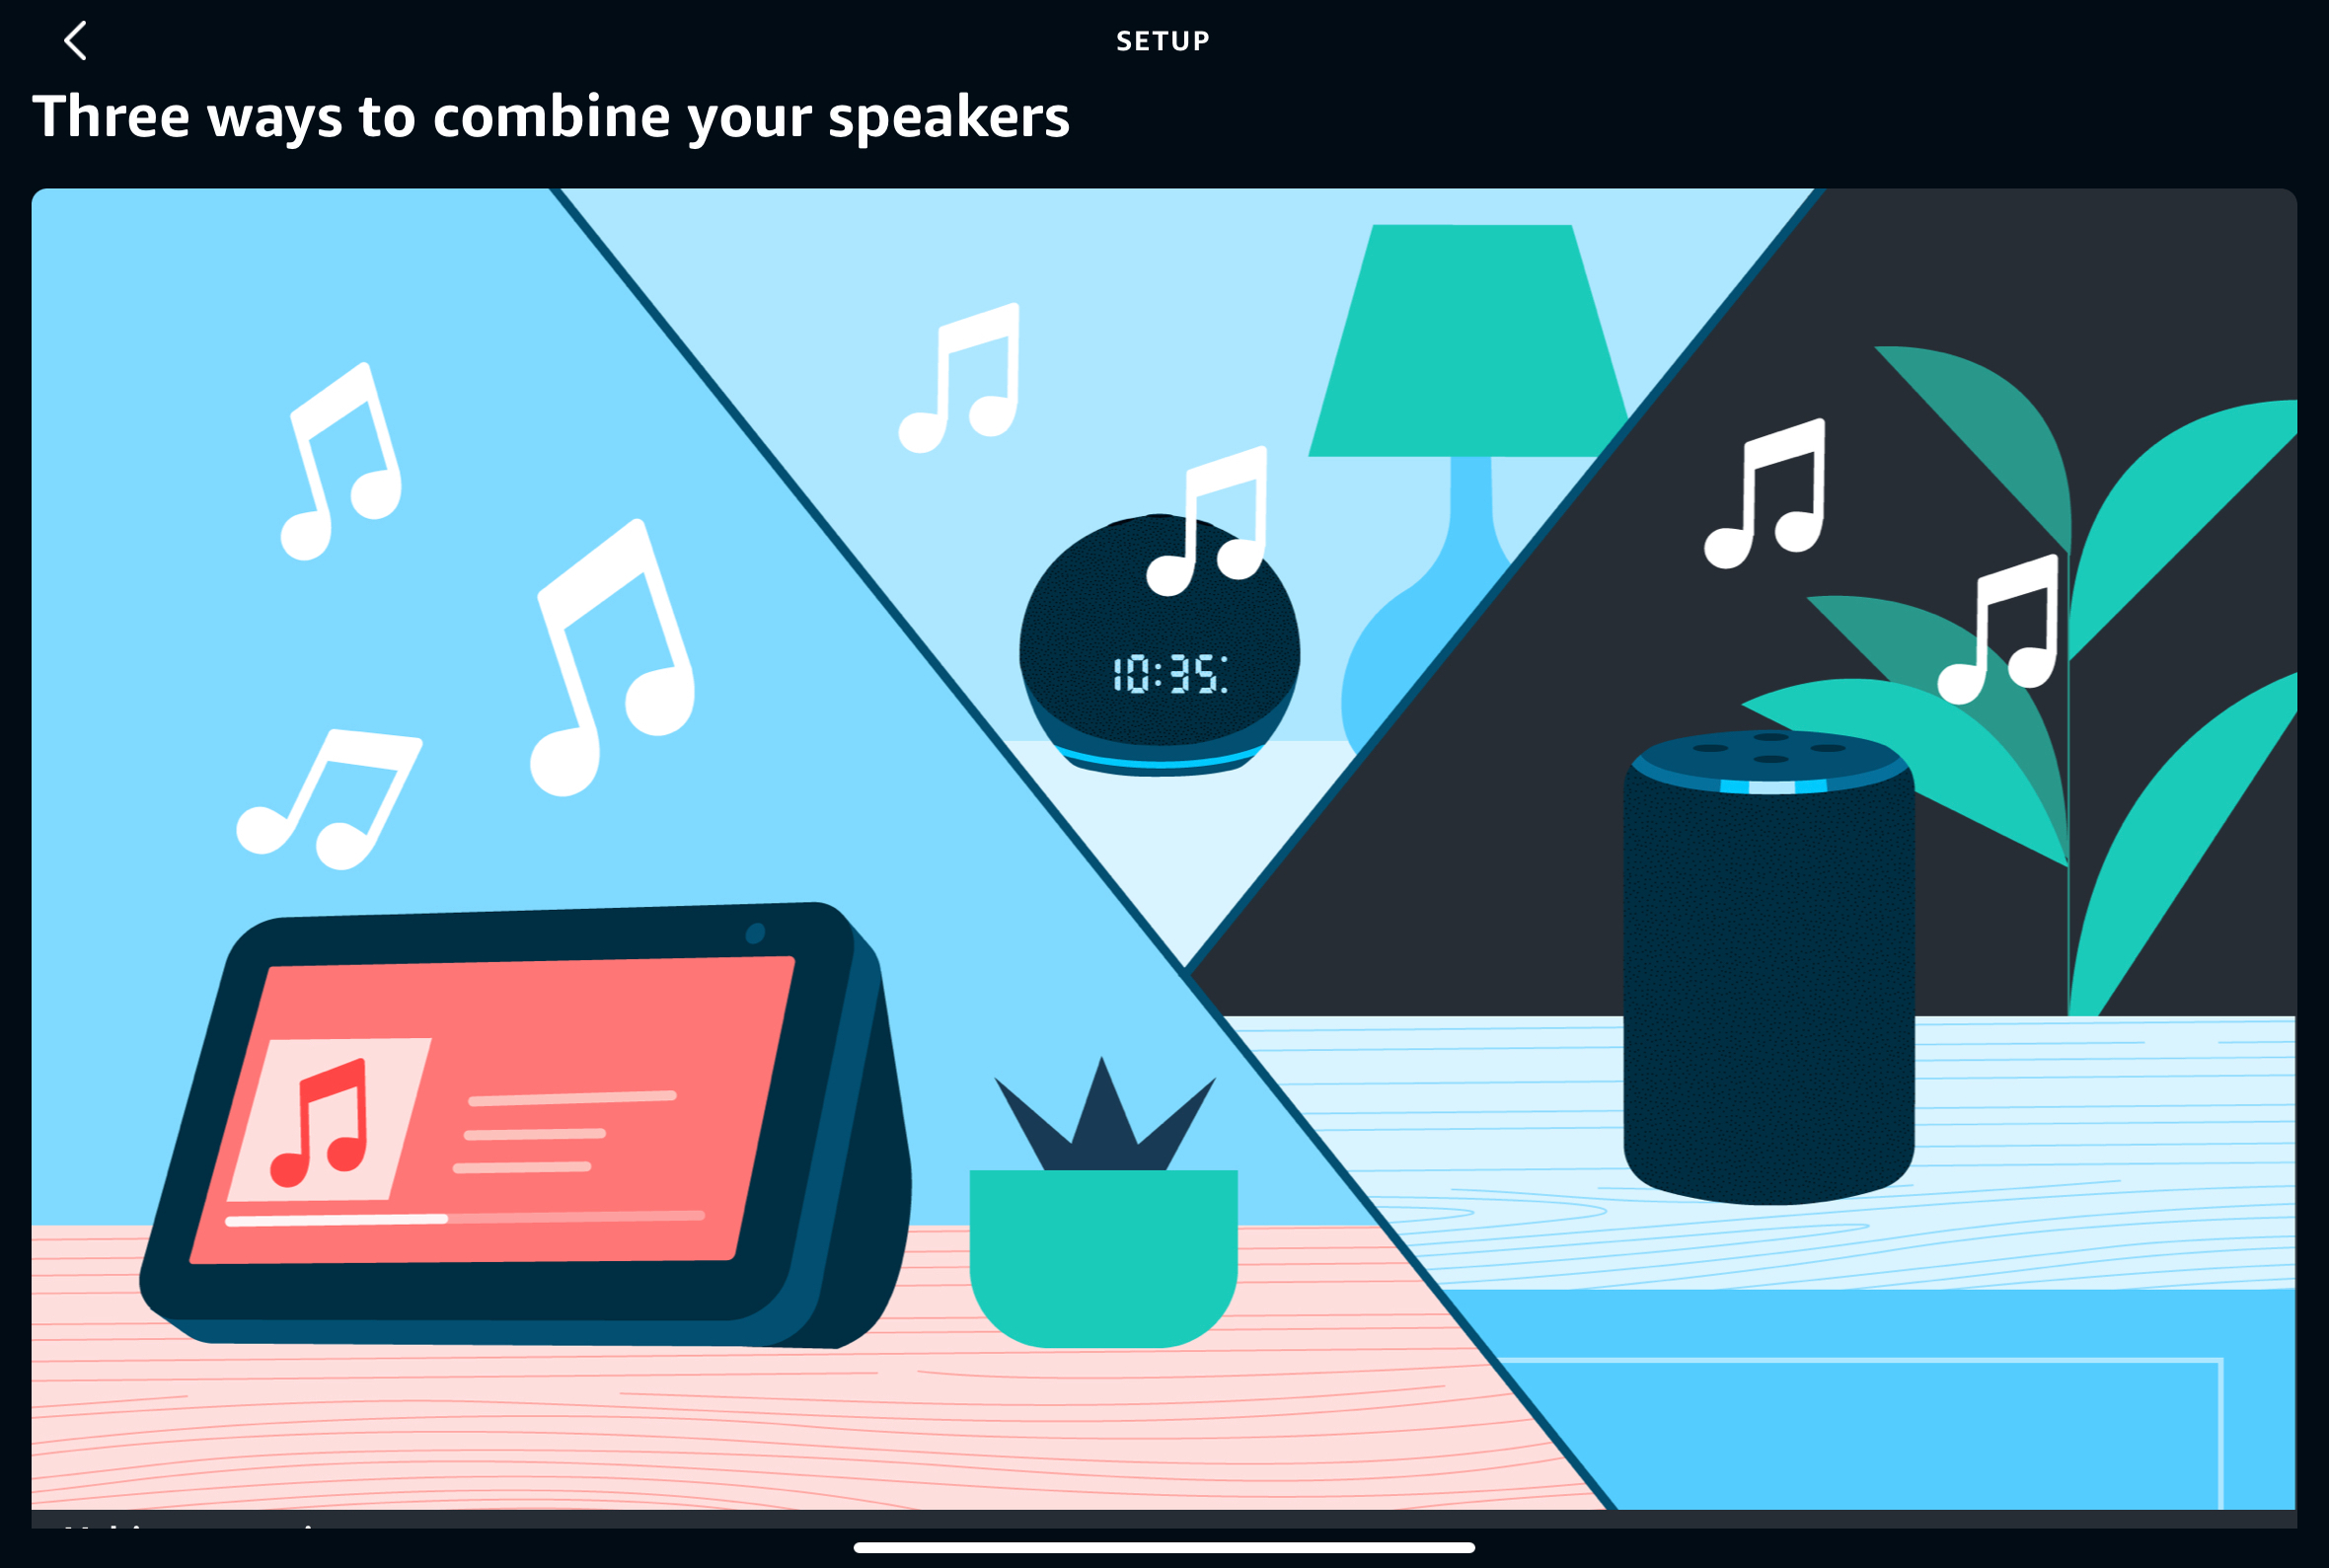 As três maneiras do Alexa de combinar seus alto-falantes.